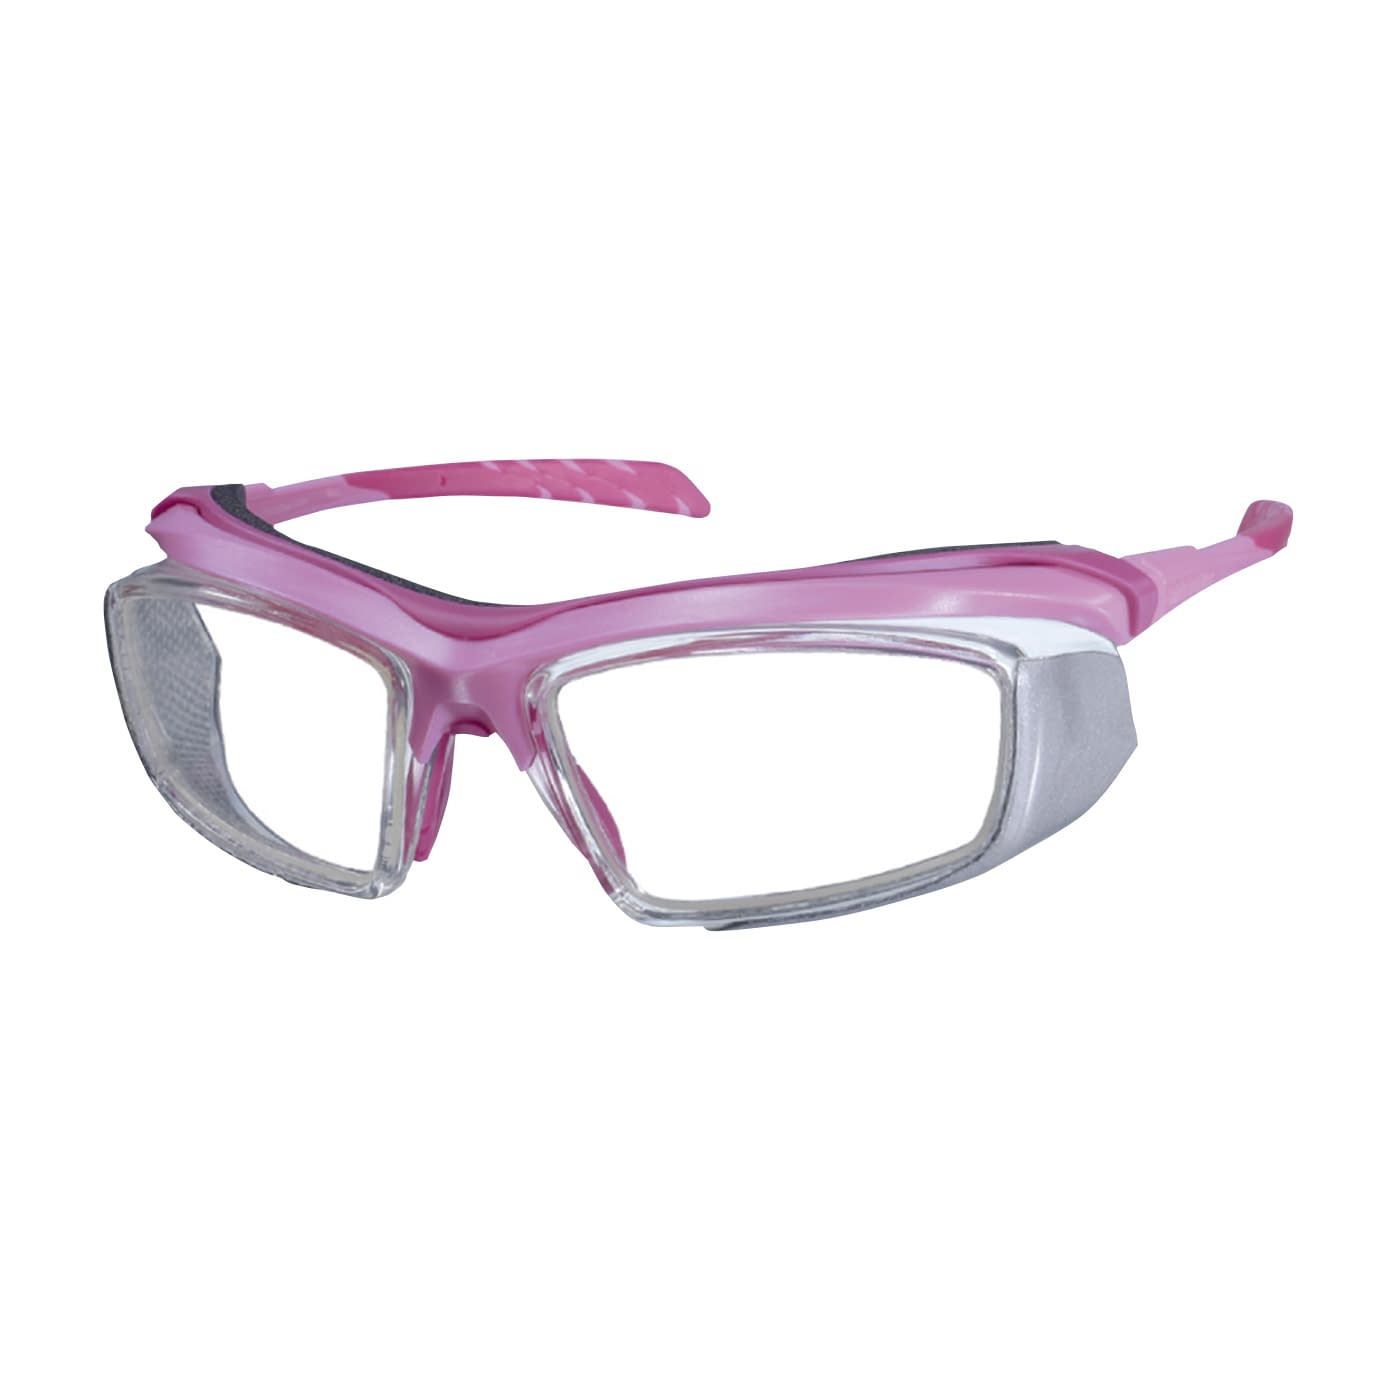 放射線防護眼鏡プロテックアイウェア PT-CMT-P(ピンク)PT-CMT-P(ﾋﾟﾝｸ)(24-8501-02)【マエダ】(販売単位:1)